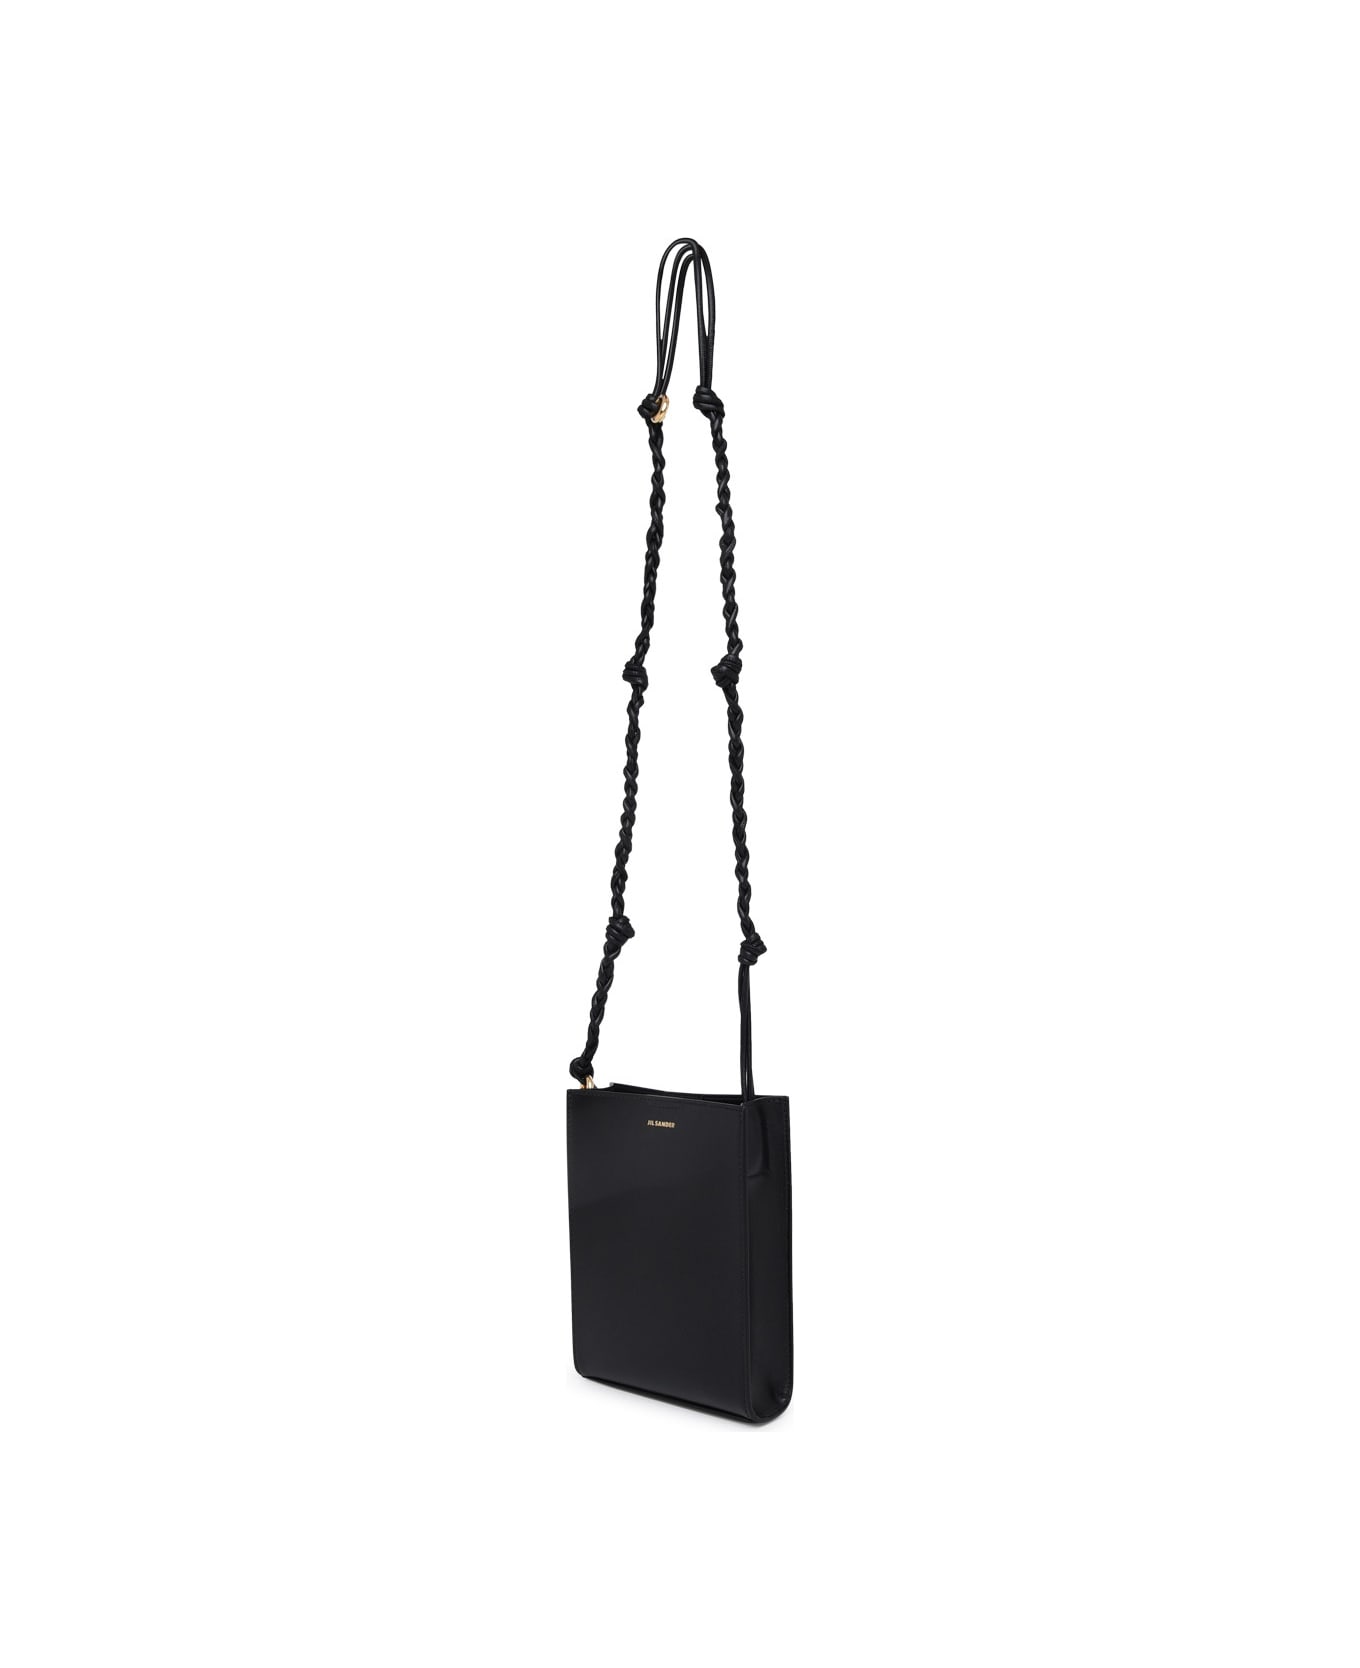 Jil Sander Tangle Ring Crossbody Bag In Black Leather - Black